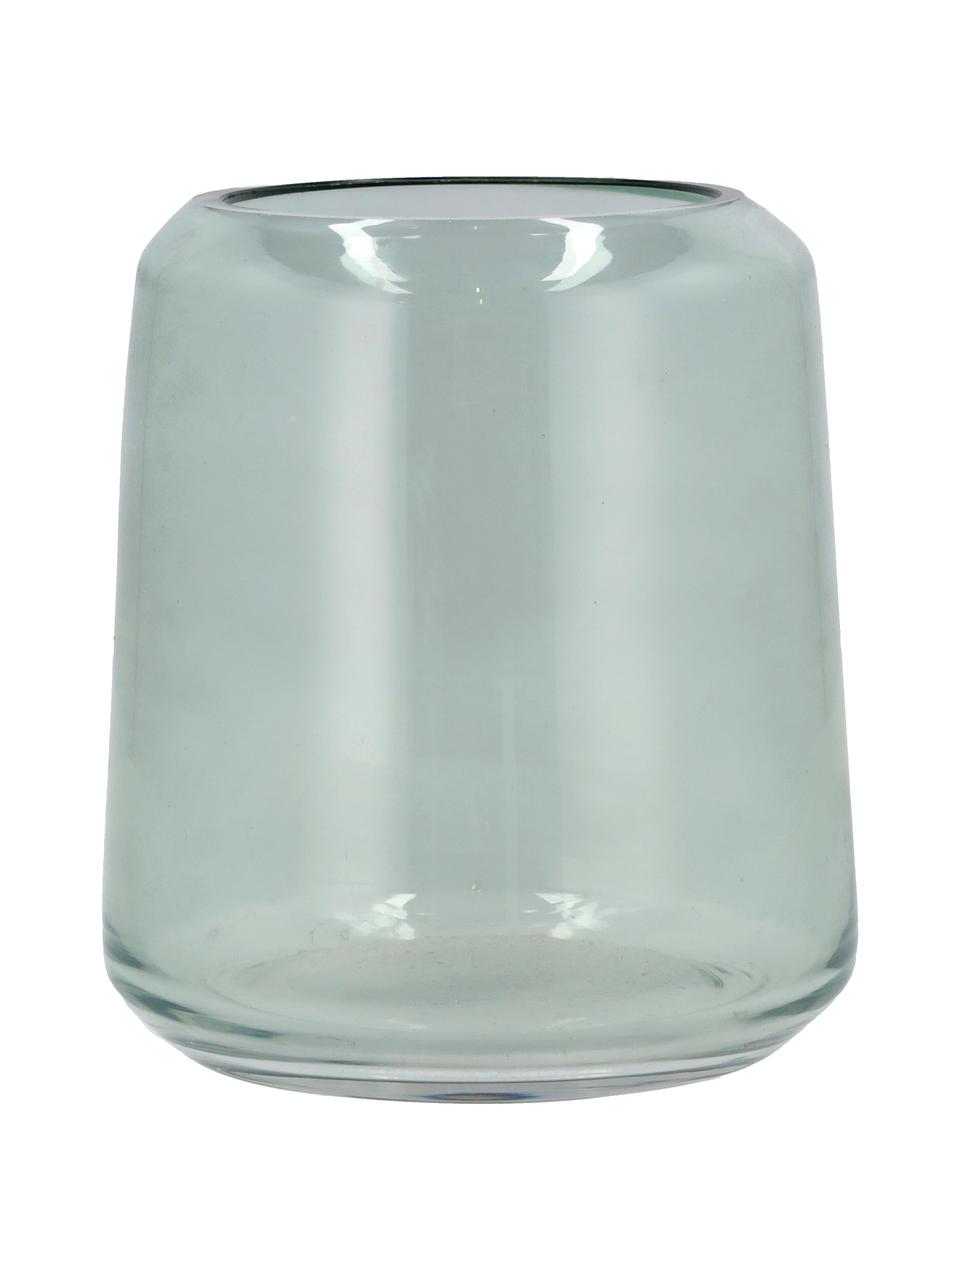 Zahnputzbecher Vintage aus Glas, Glas, Hellgrün, Ø 10 x H 12 cm